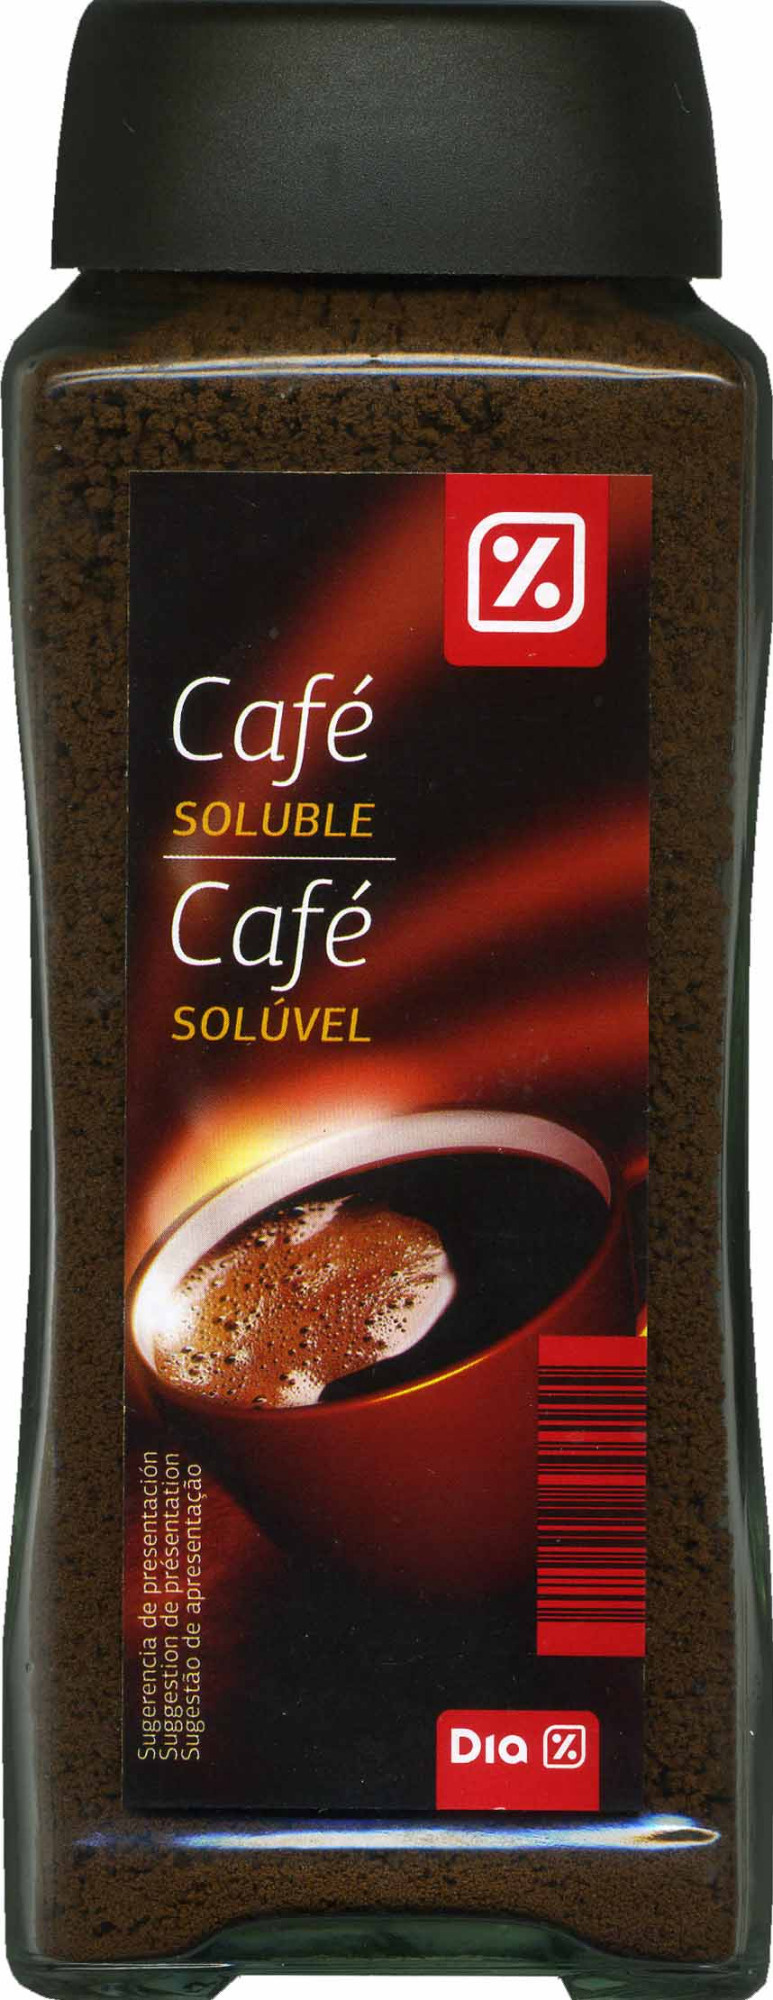 Café soluble - Producto